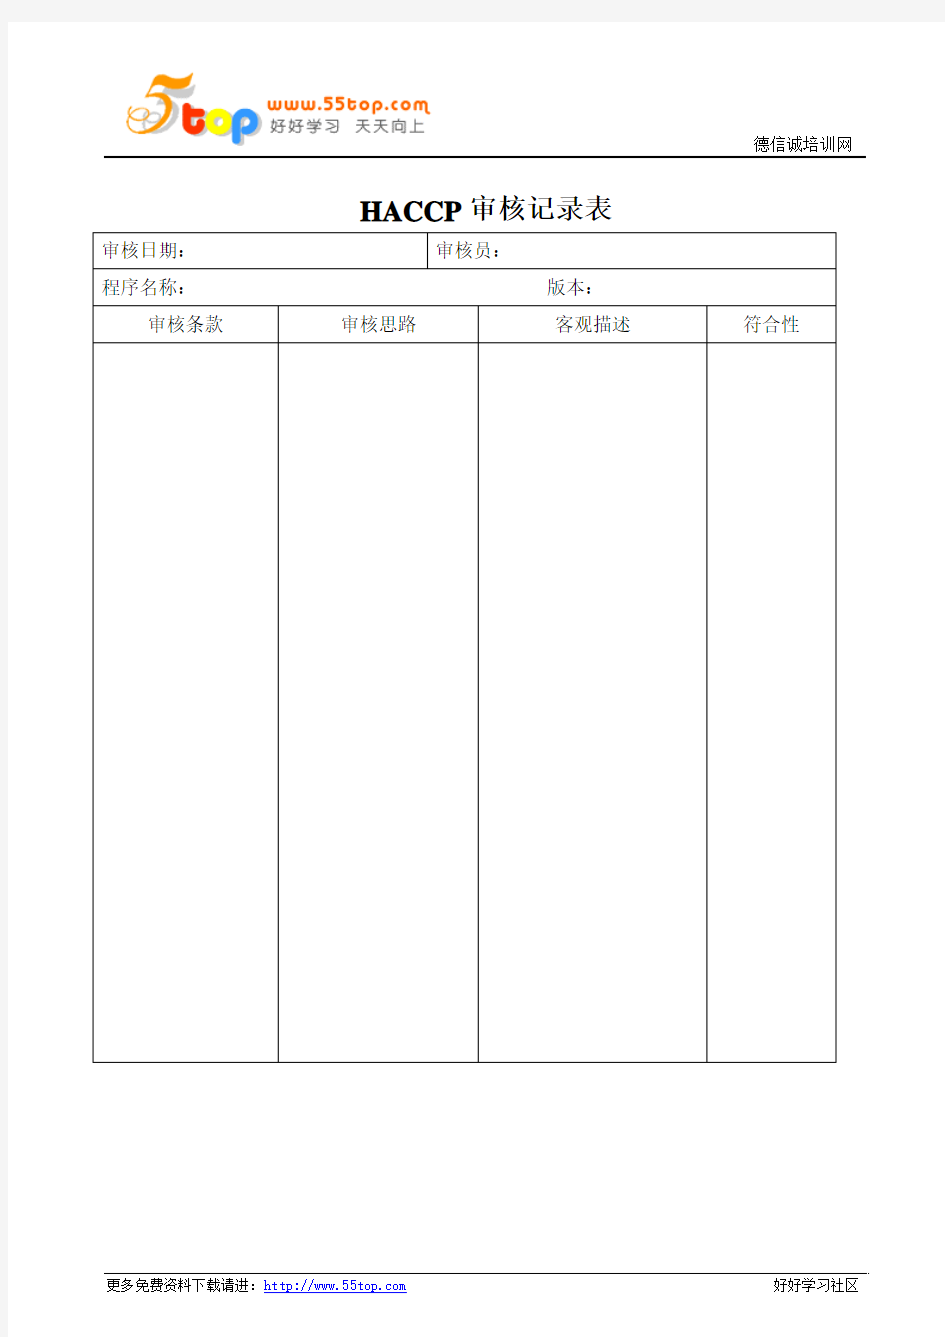 HACCP审核记录表